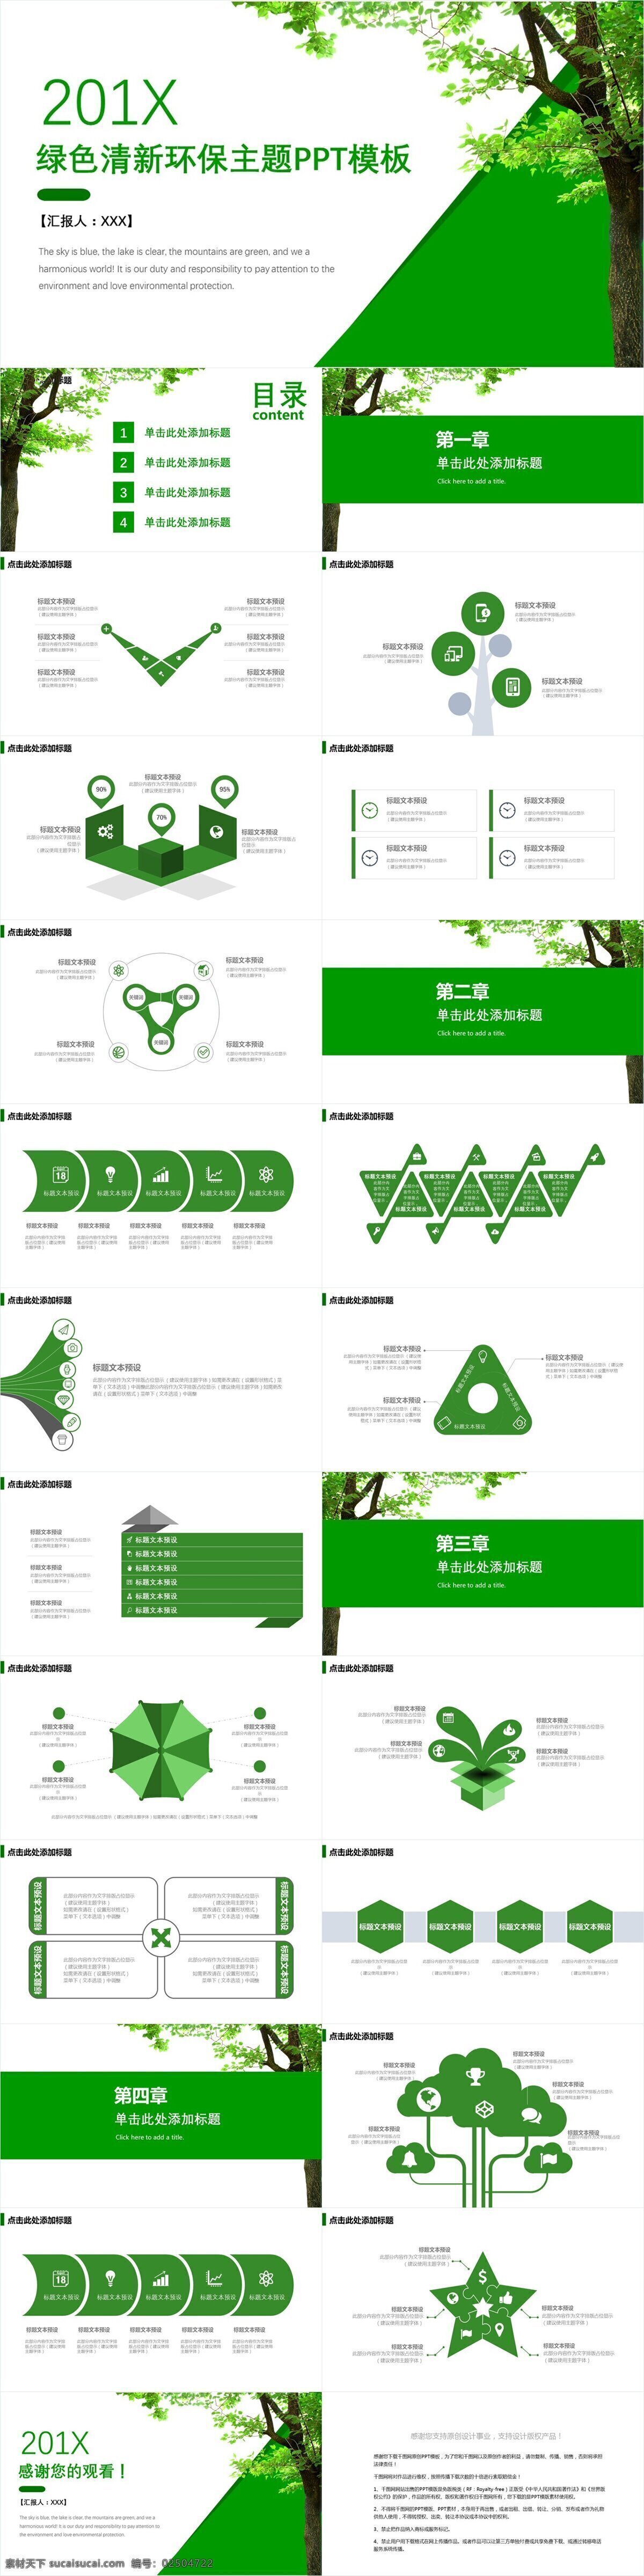 绿色 清新 环保 主题 模板 创意 画册 企业宣传 产品介绍 企业简介 商务合作 策划